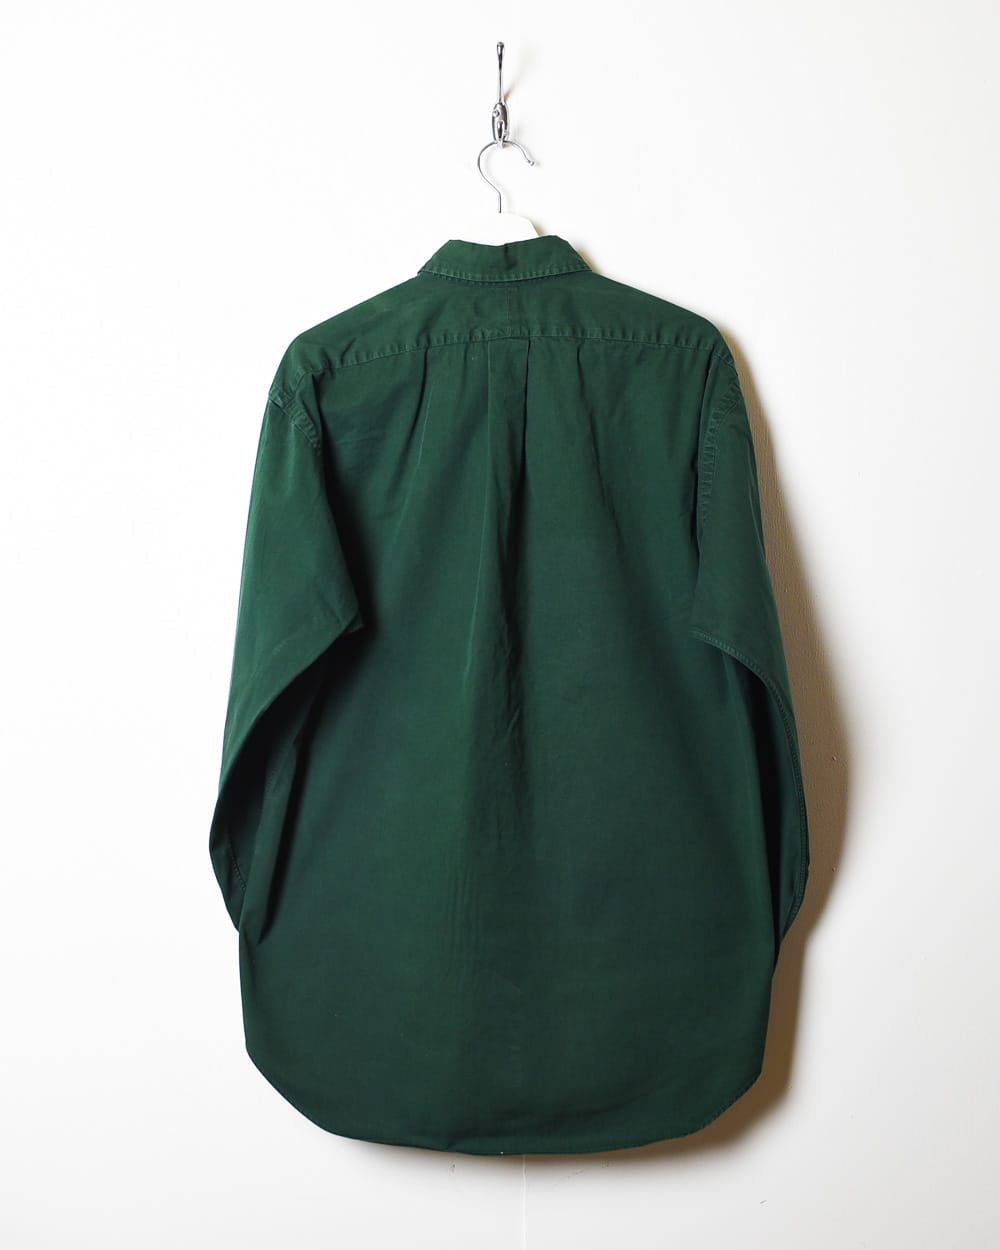 Green Polo Ralph Lauren Blake Shirt - Medium